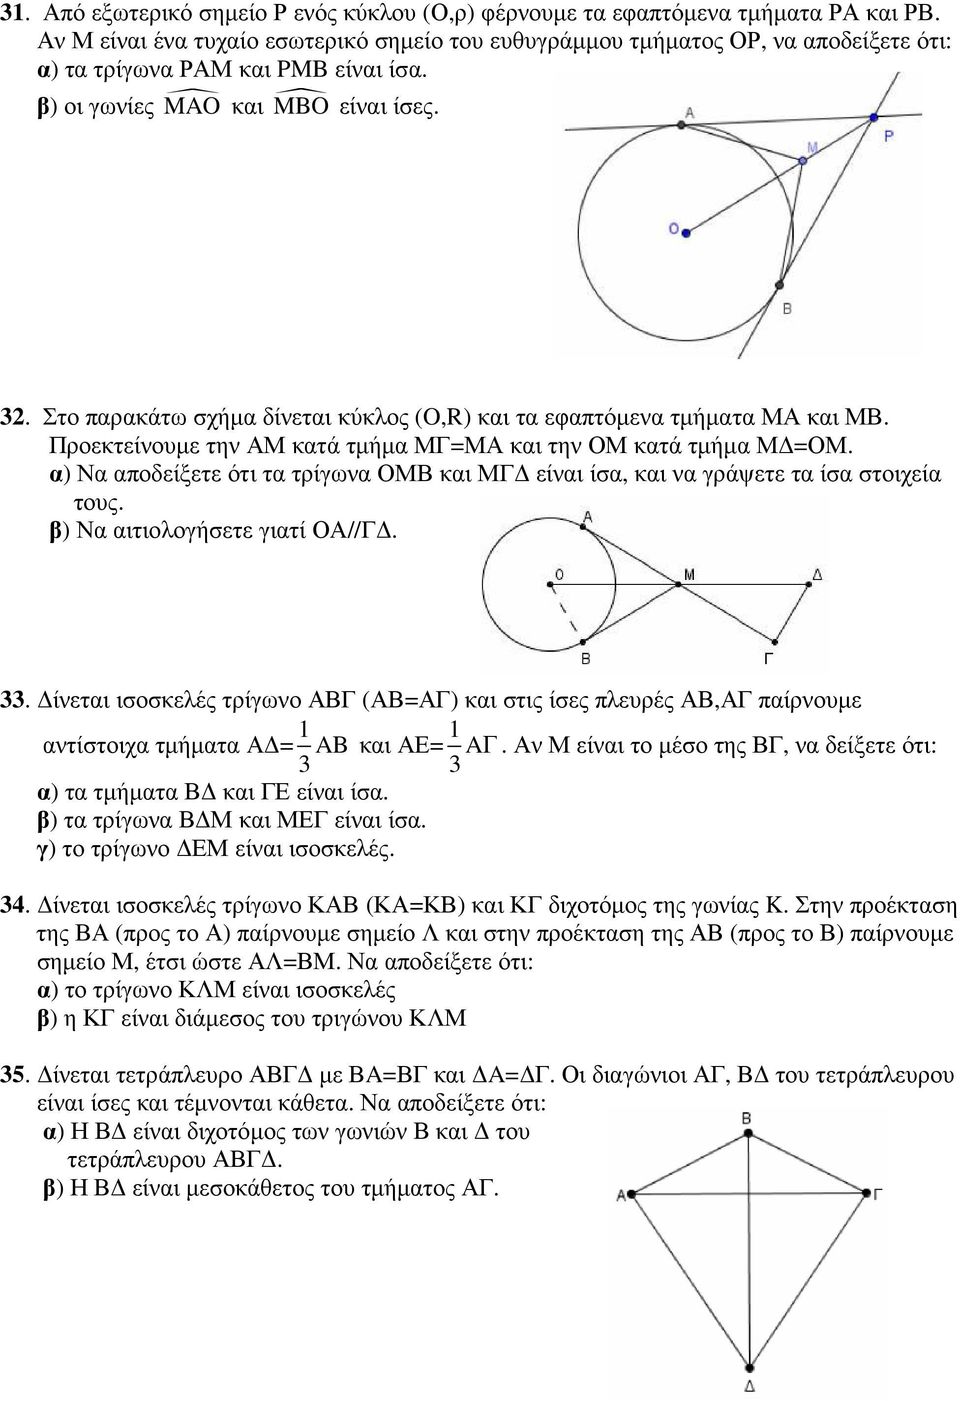 Στο παρακάτω σχήµα δίνεται κύκλος (O,R) και τα εφαπτόµενα τµήµατα ΜΑ και ΜΒ. Προεκτείνουµε την ΑΜ κατά τµήµα ΜΓ=ΜΑ και την ΟΜ κατά τµήµα Μ =ΟΜ.